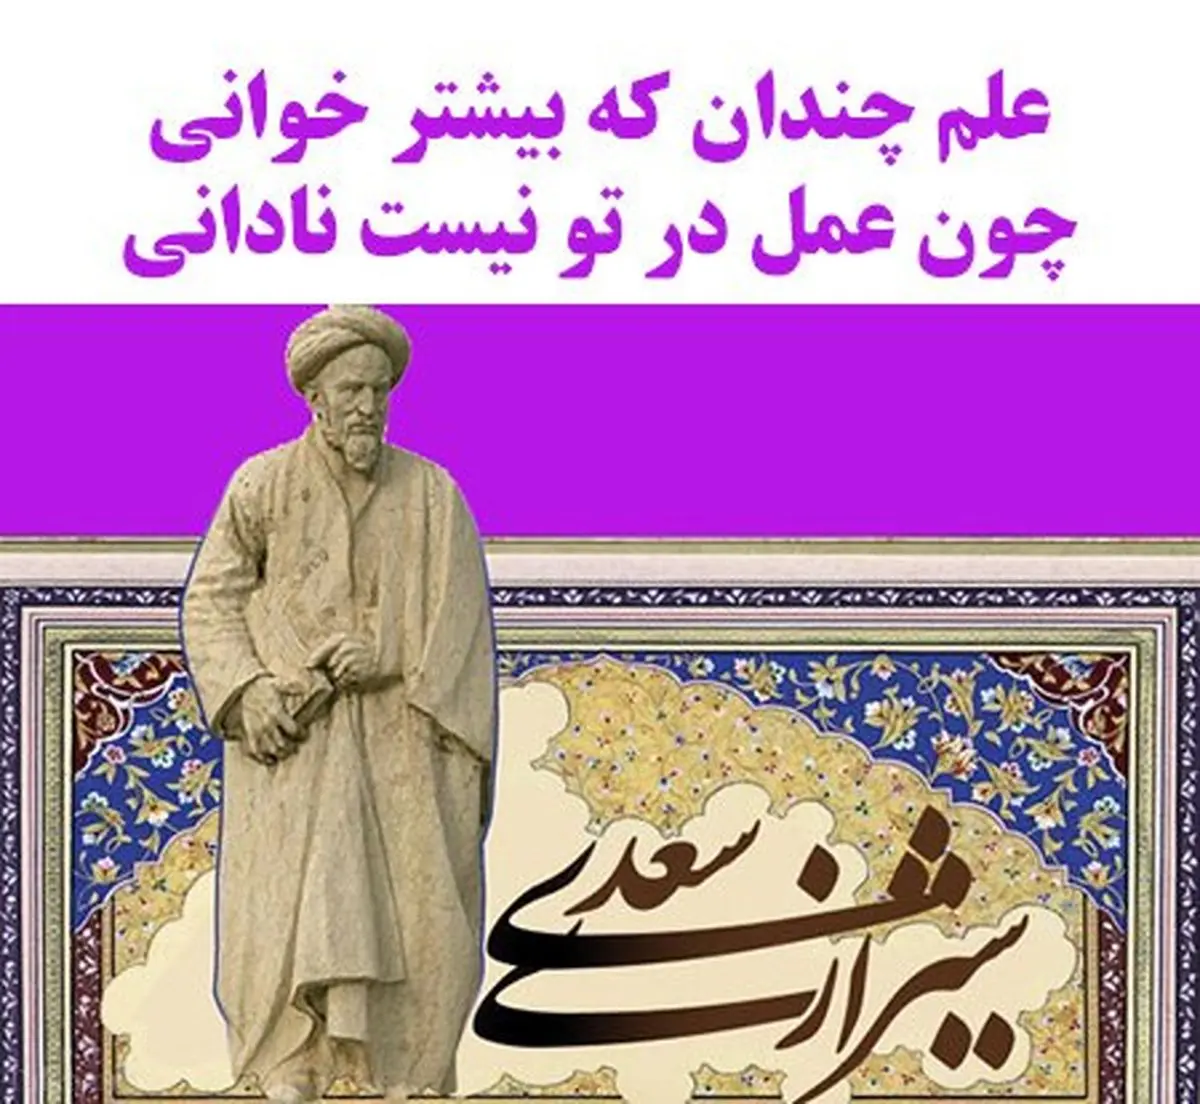 به بهانه نزدیک شدن به روز بزرگداشت سعدی استاد سخن|گلچینی از بهترین حکایت های گلستان سعدی 